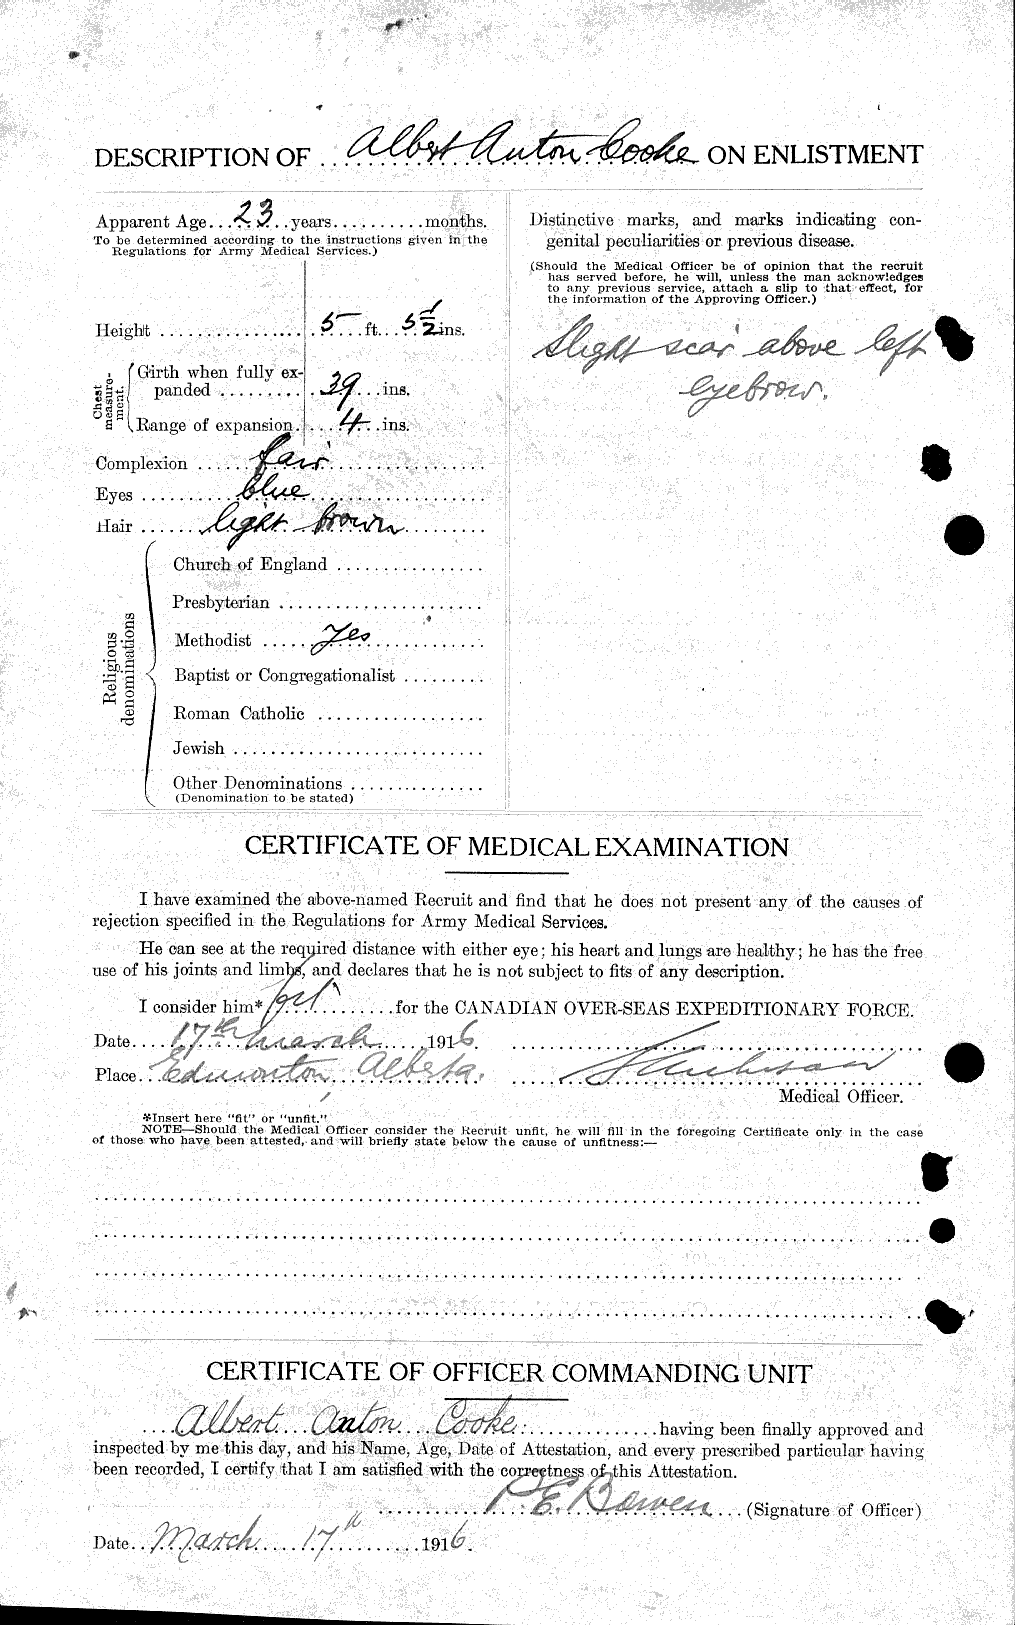 Dossiers du Personnel de la Première Guerre mondiale - CEC 031481b